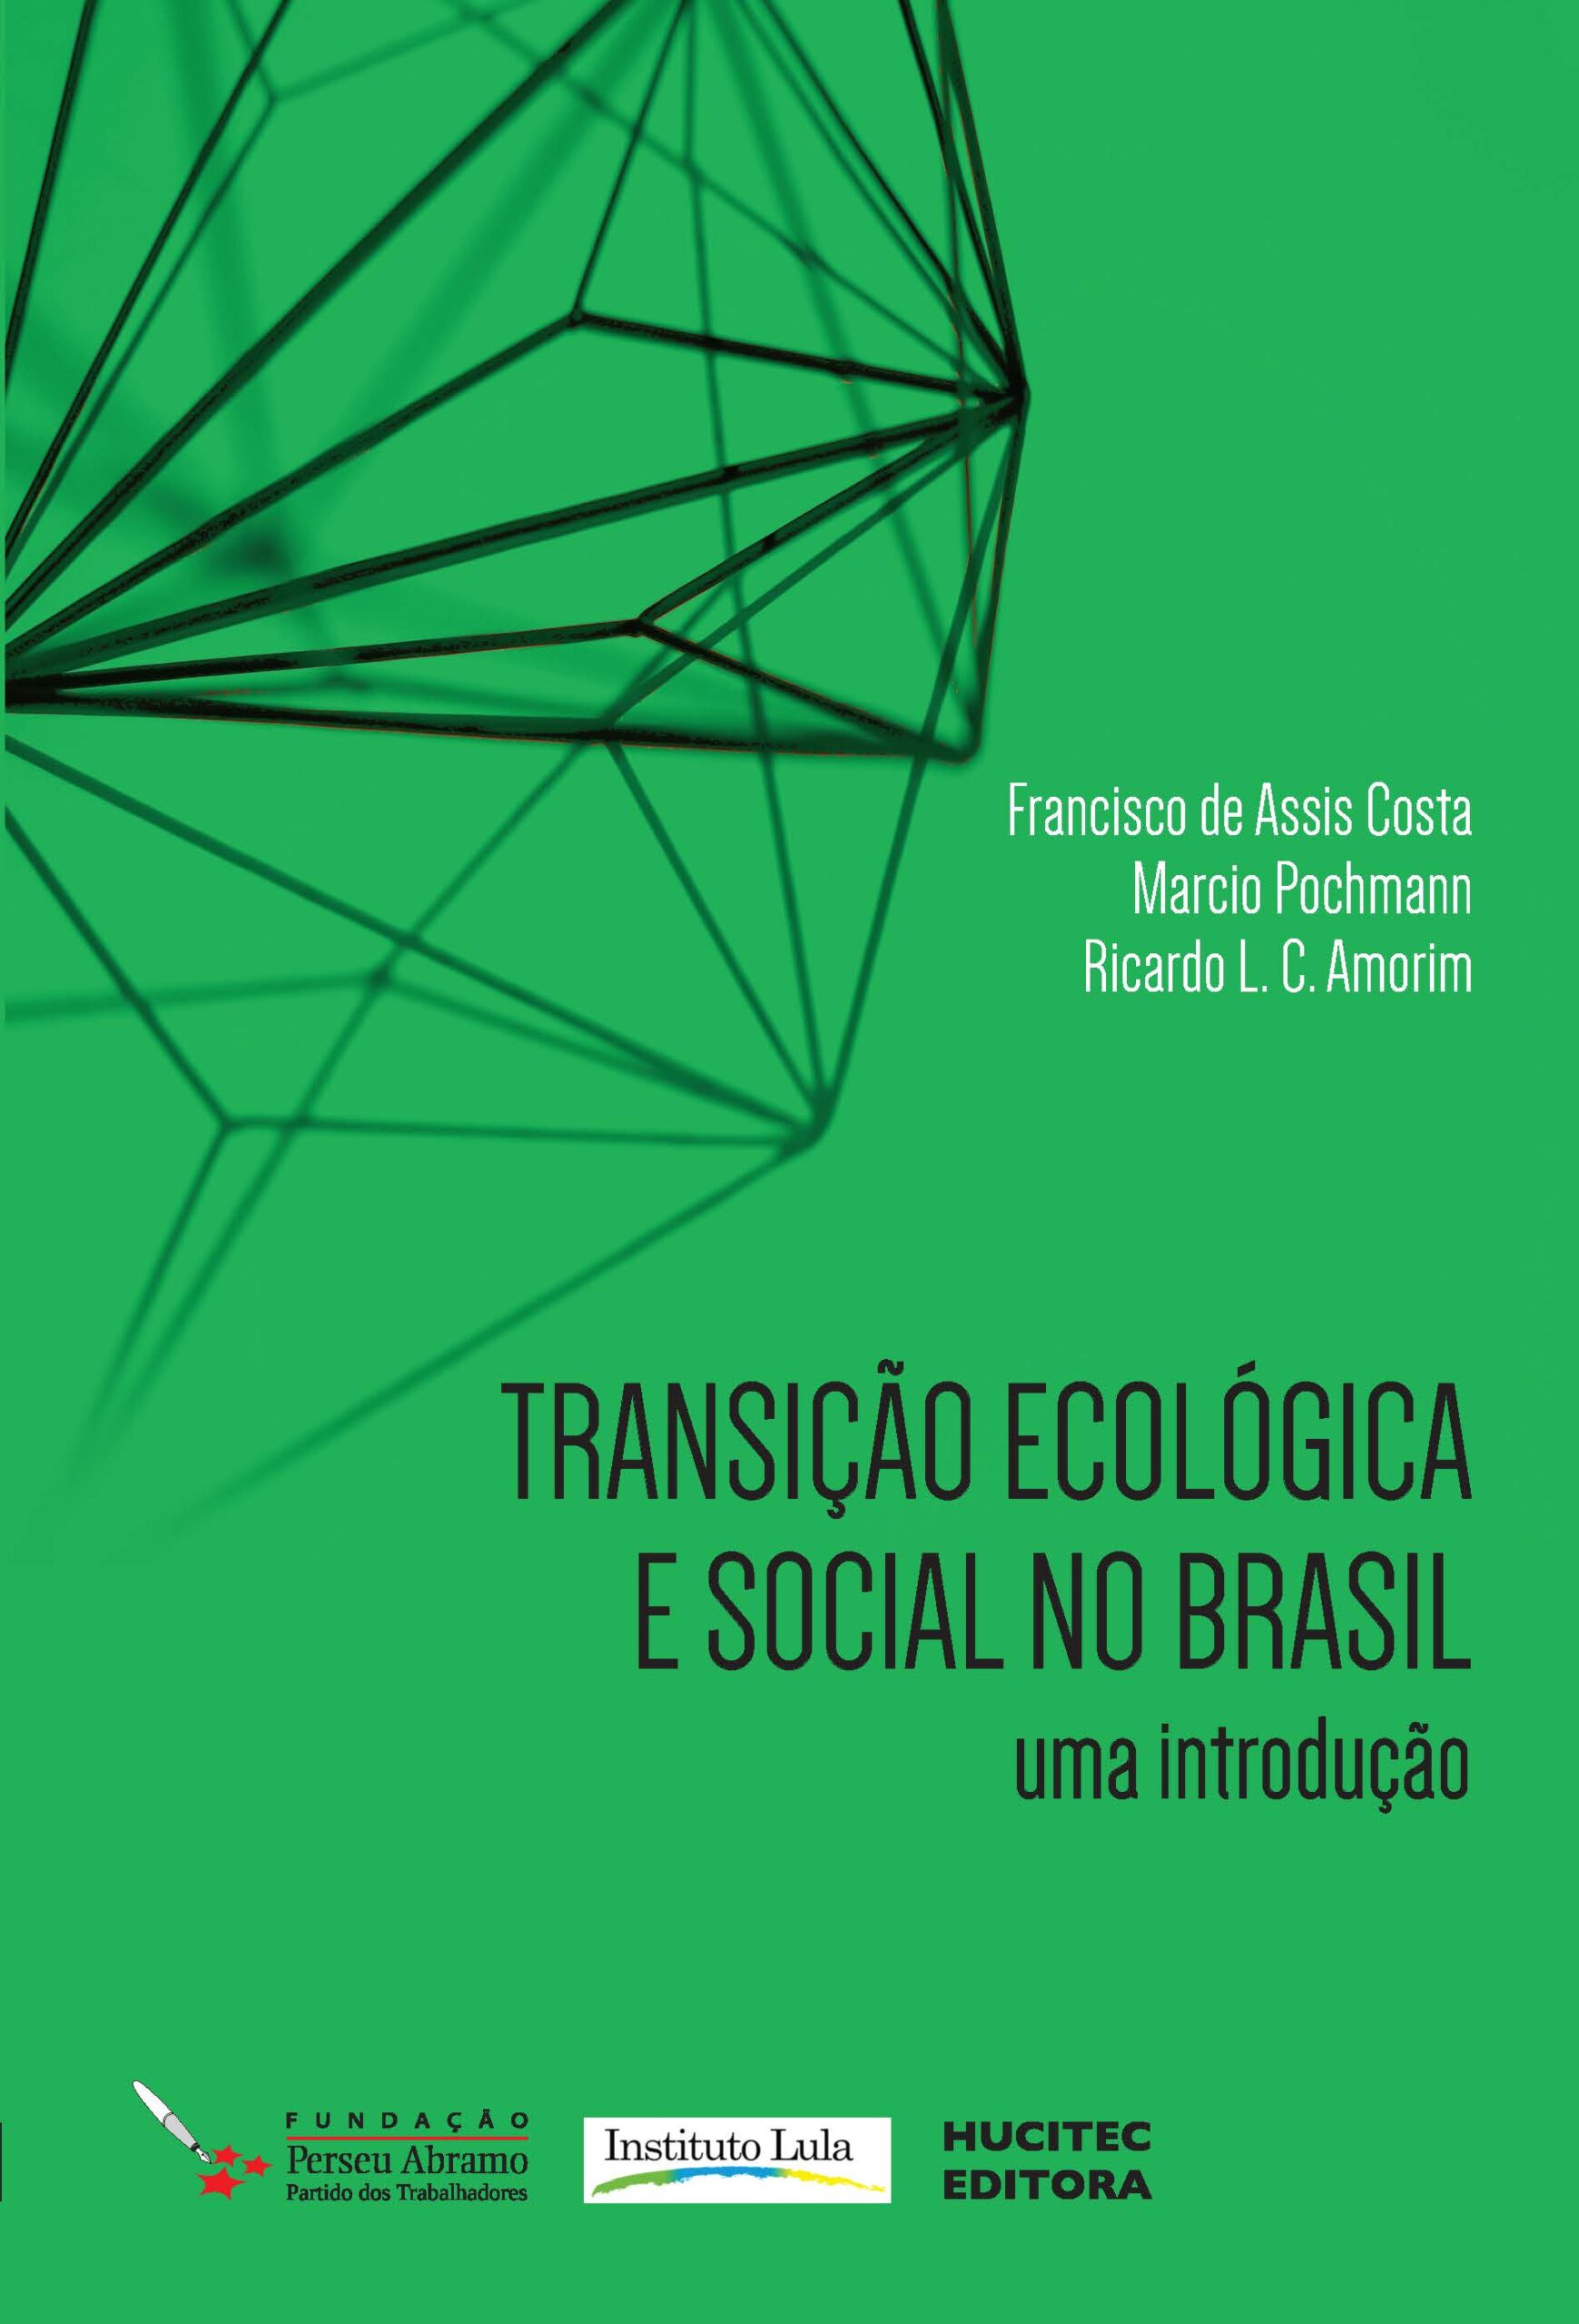 Transição ecológica e social no Brasil: uma introdução | Francisco de Assis Costa, Marcio Pochmann e Ricardo L. C. Amorim (orgs.)